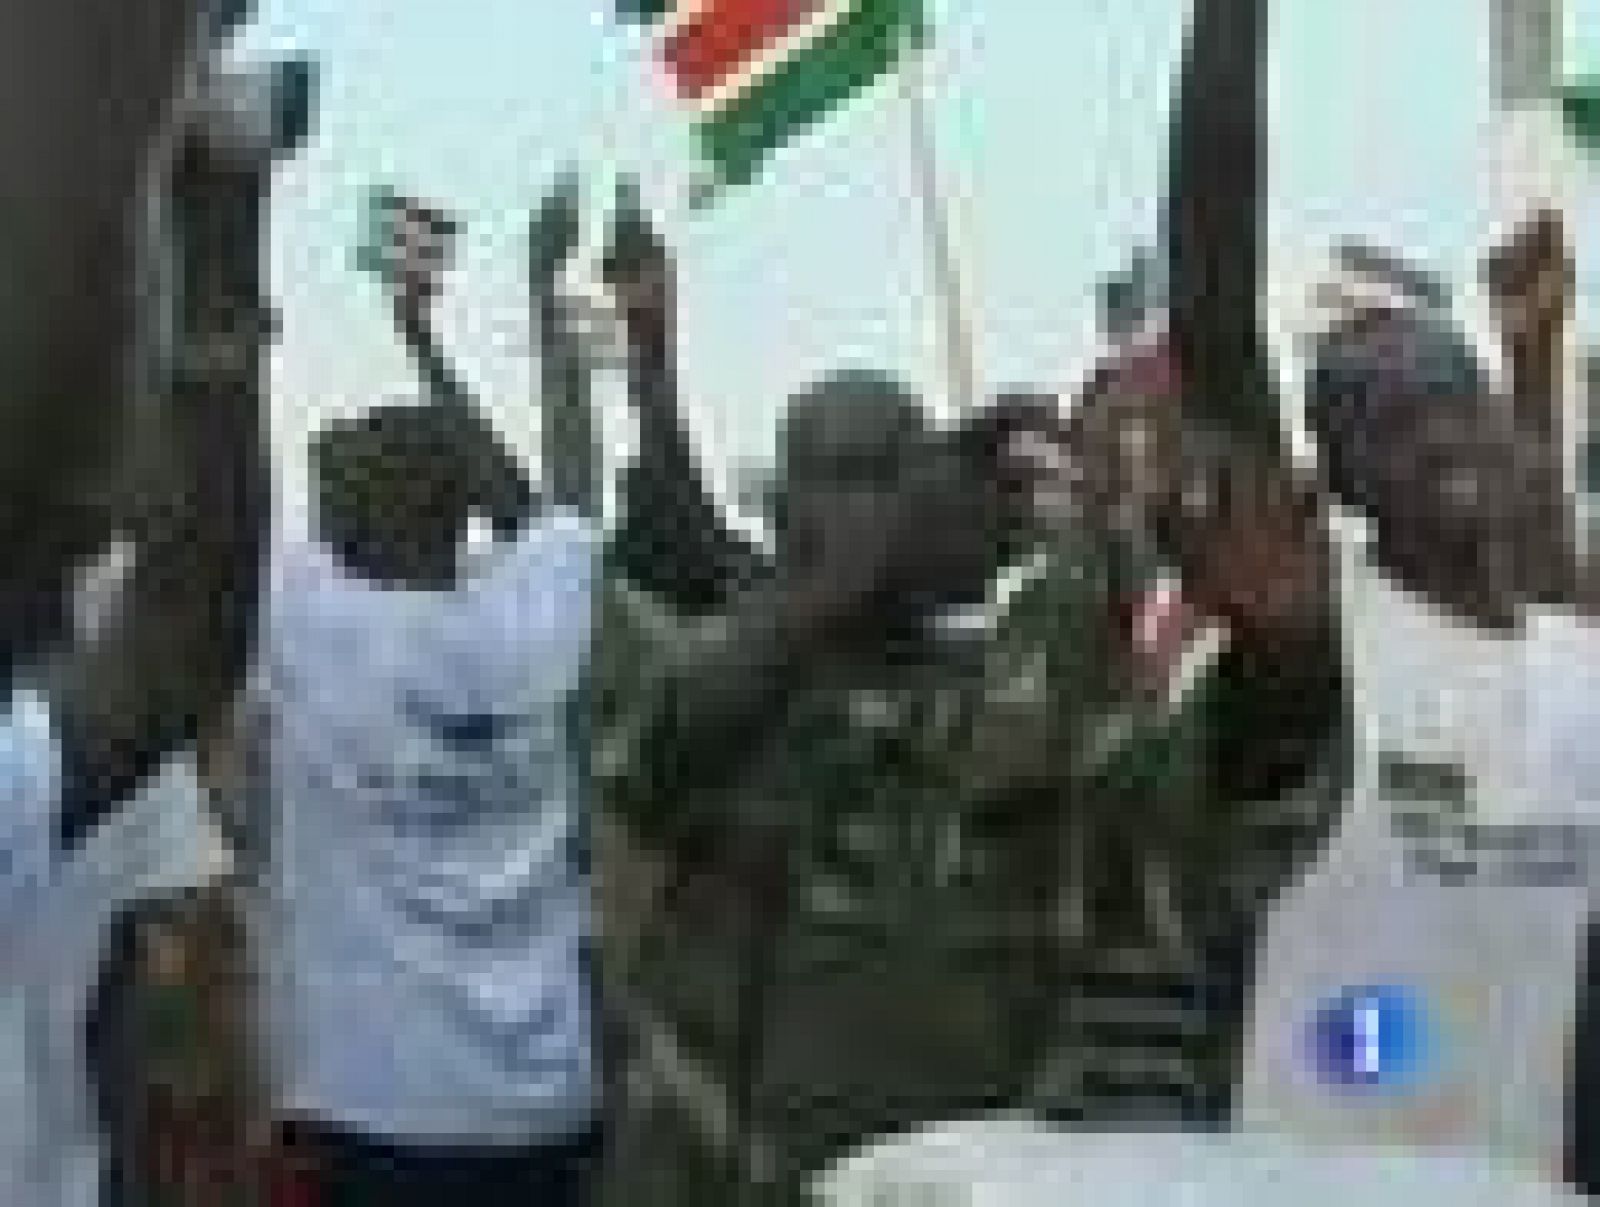 En julio 2011 el mapa de África cambiará con el nacimiento democrático de un nuevo Estado: Sudán del Sur. 